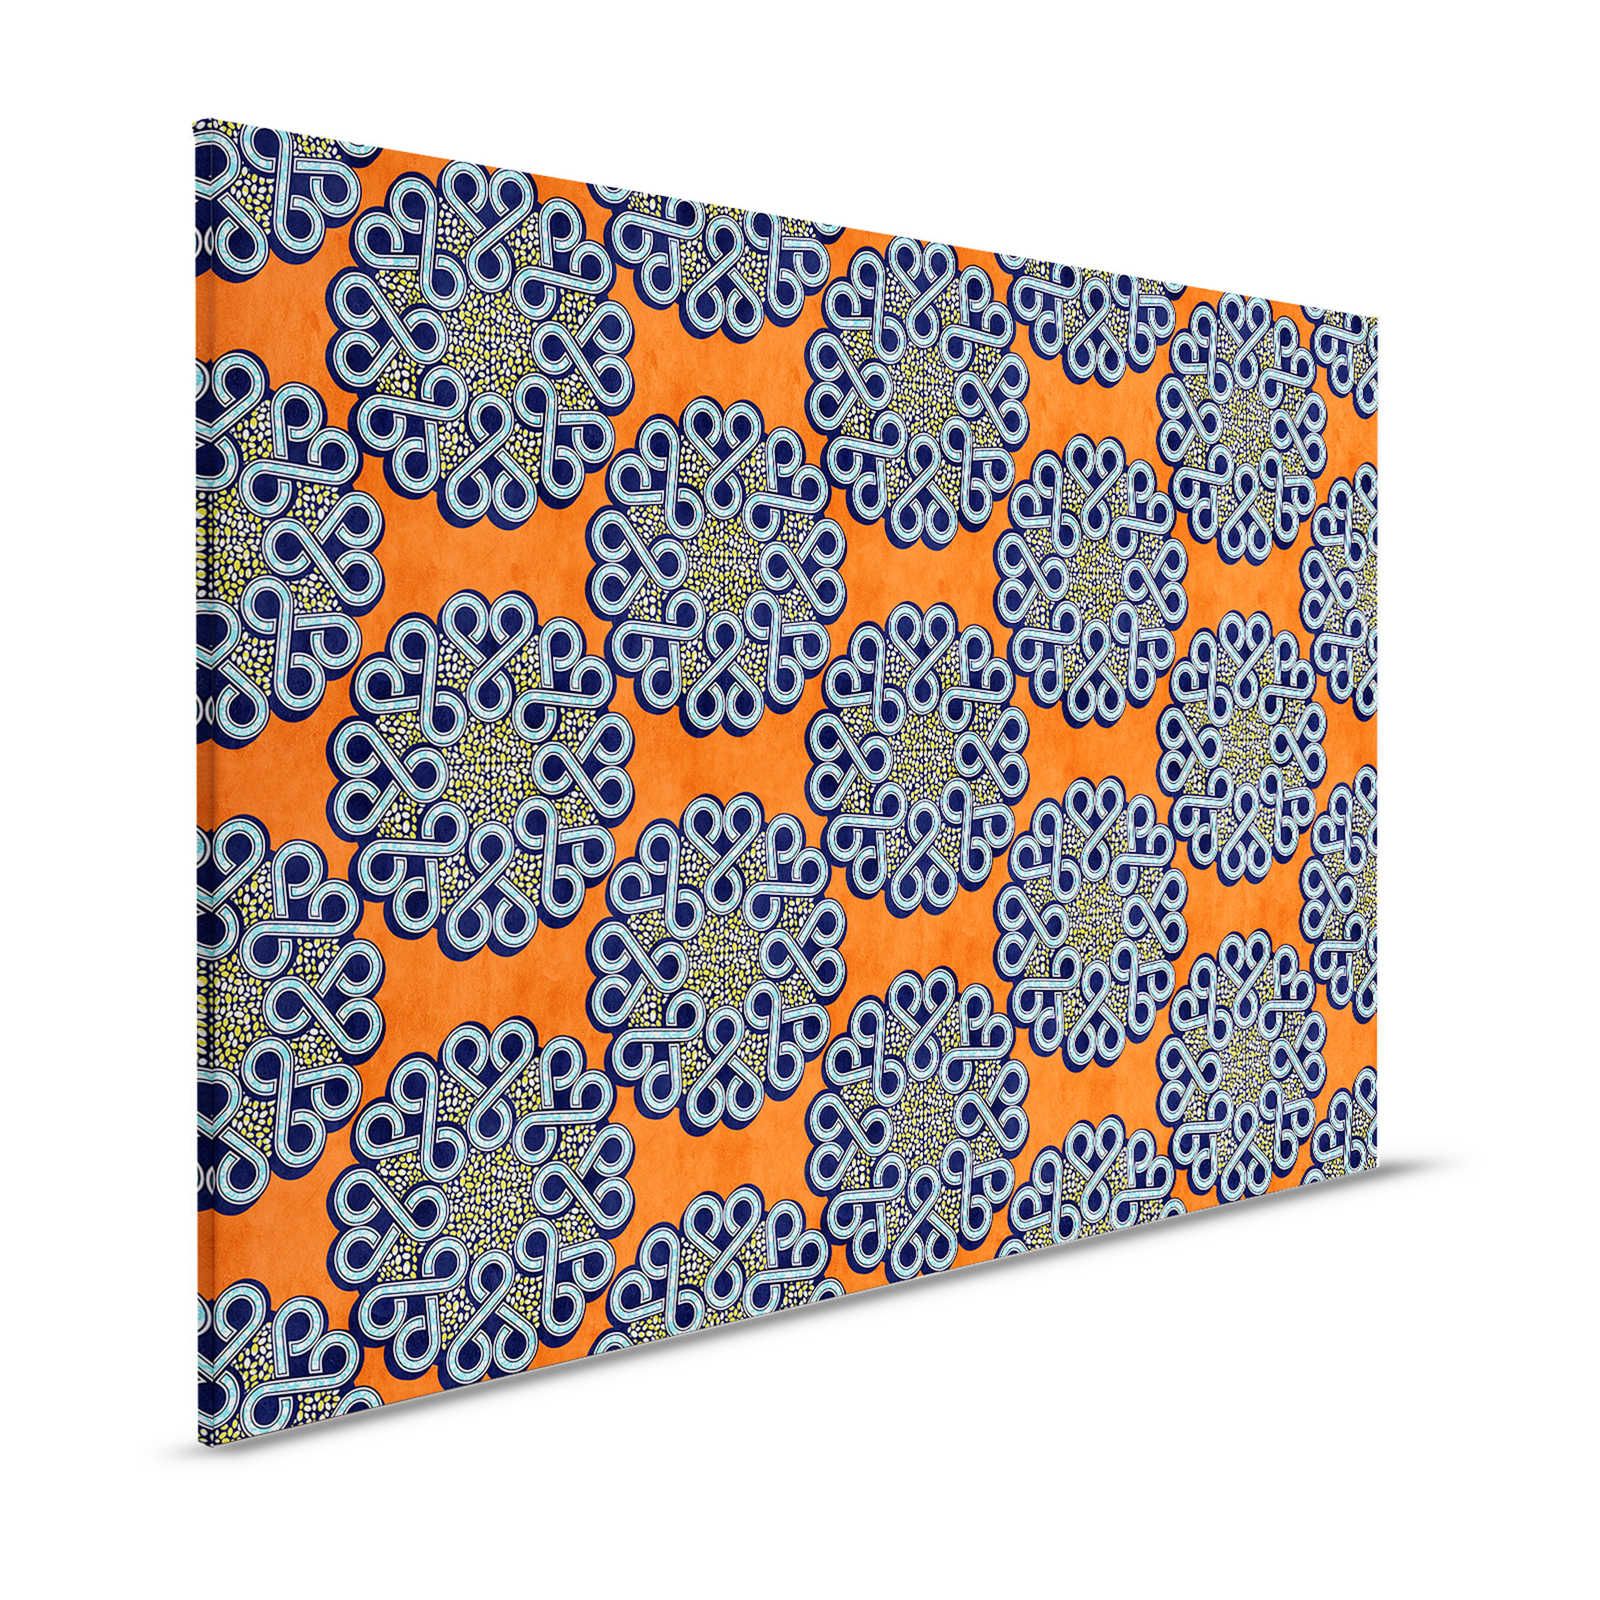 Dakar 2 - Toile africaine tissu de cire motif orange, bleu - 1,20 m x 0,80 m
